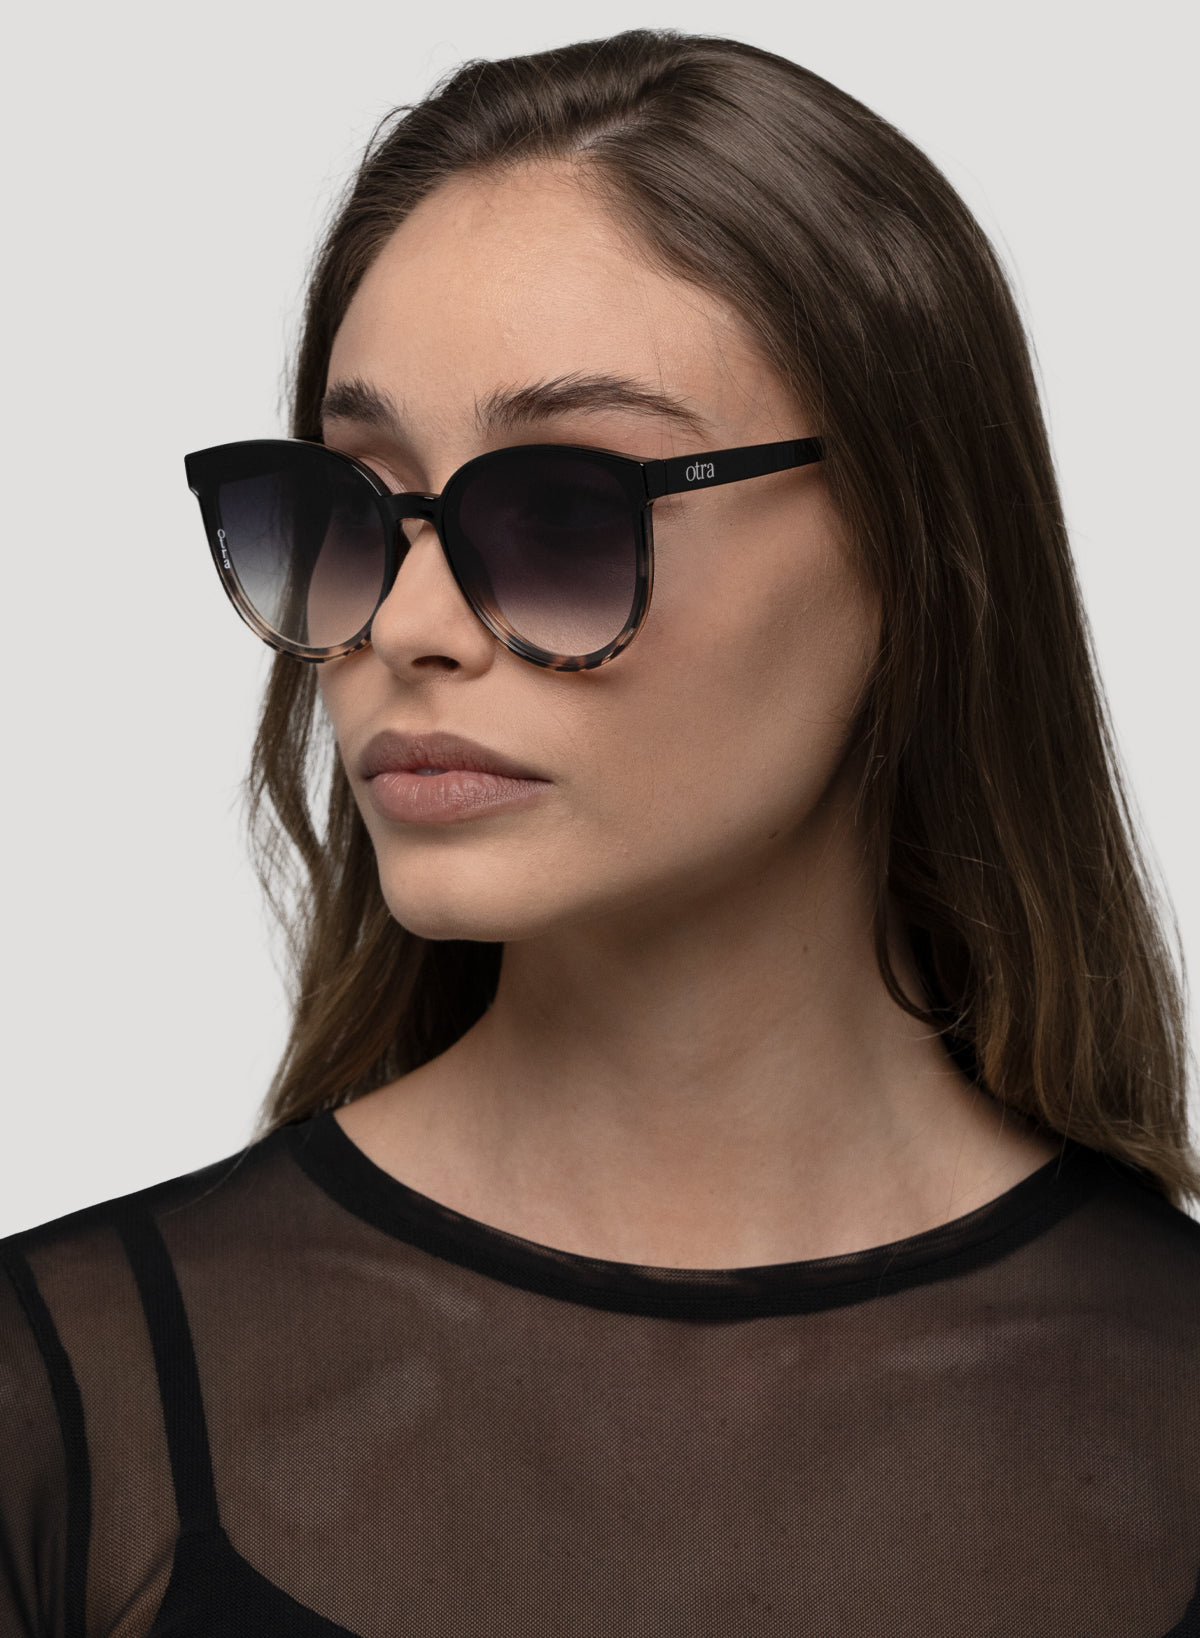 Model side view of Oversized Dali sunglasses in tortoiseshell